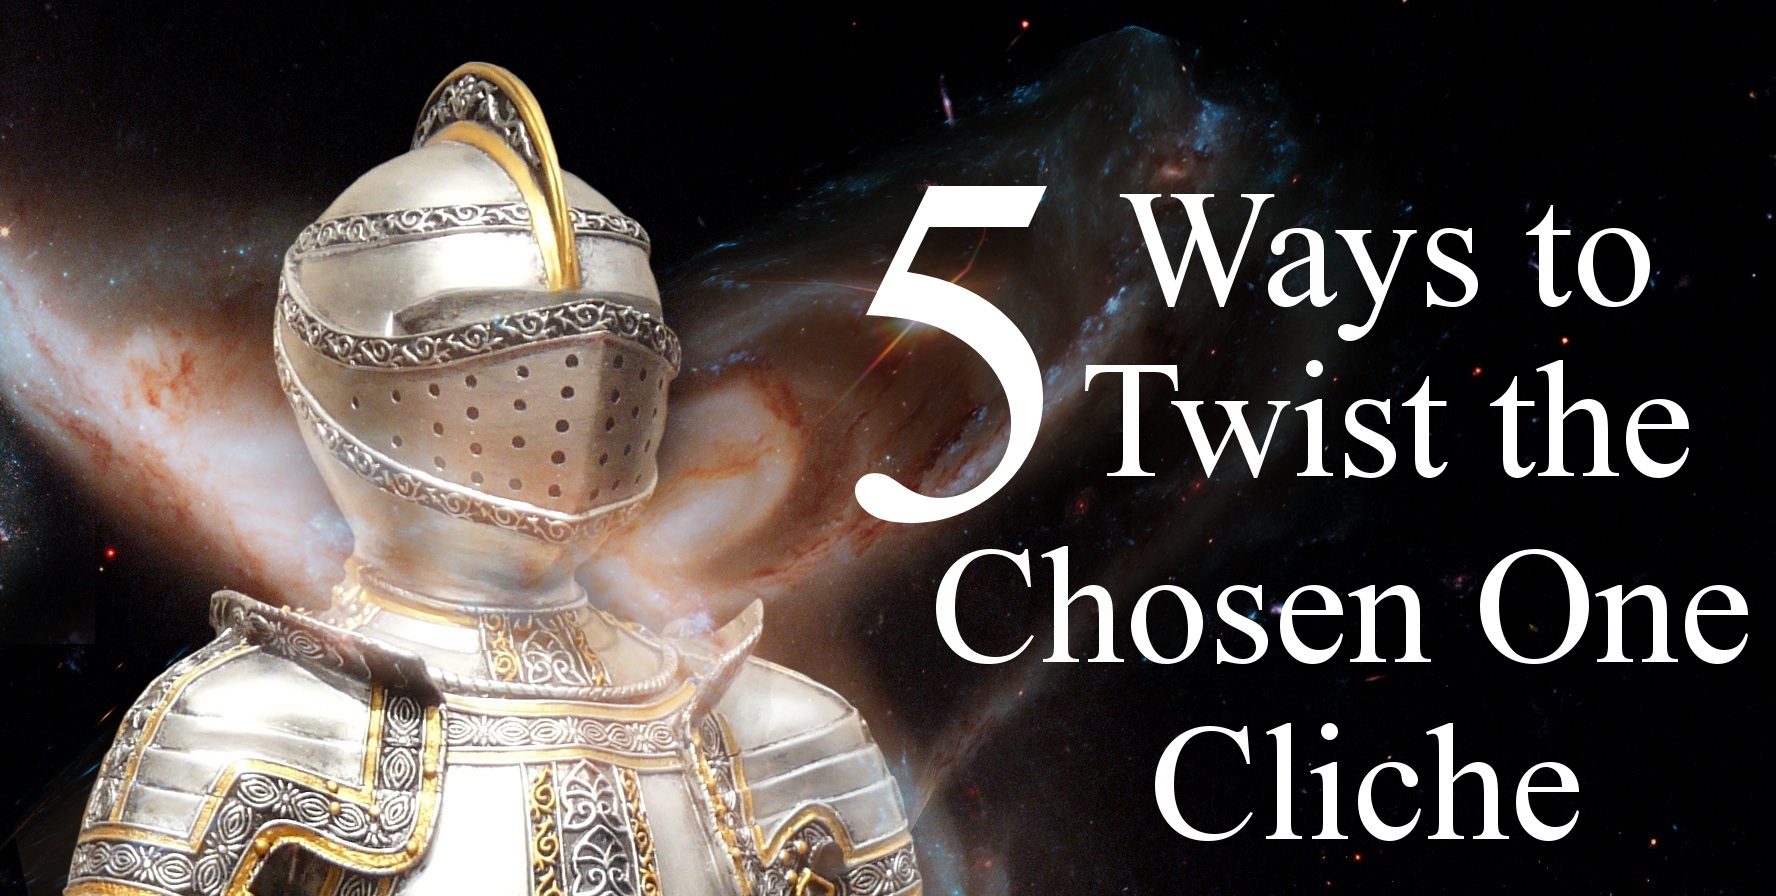 Five Ways to Twist the Chosen One Cliche